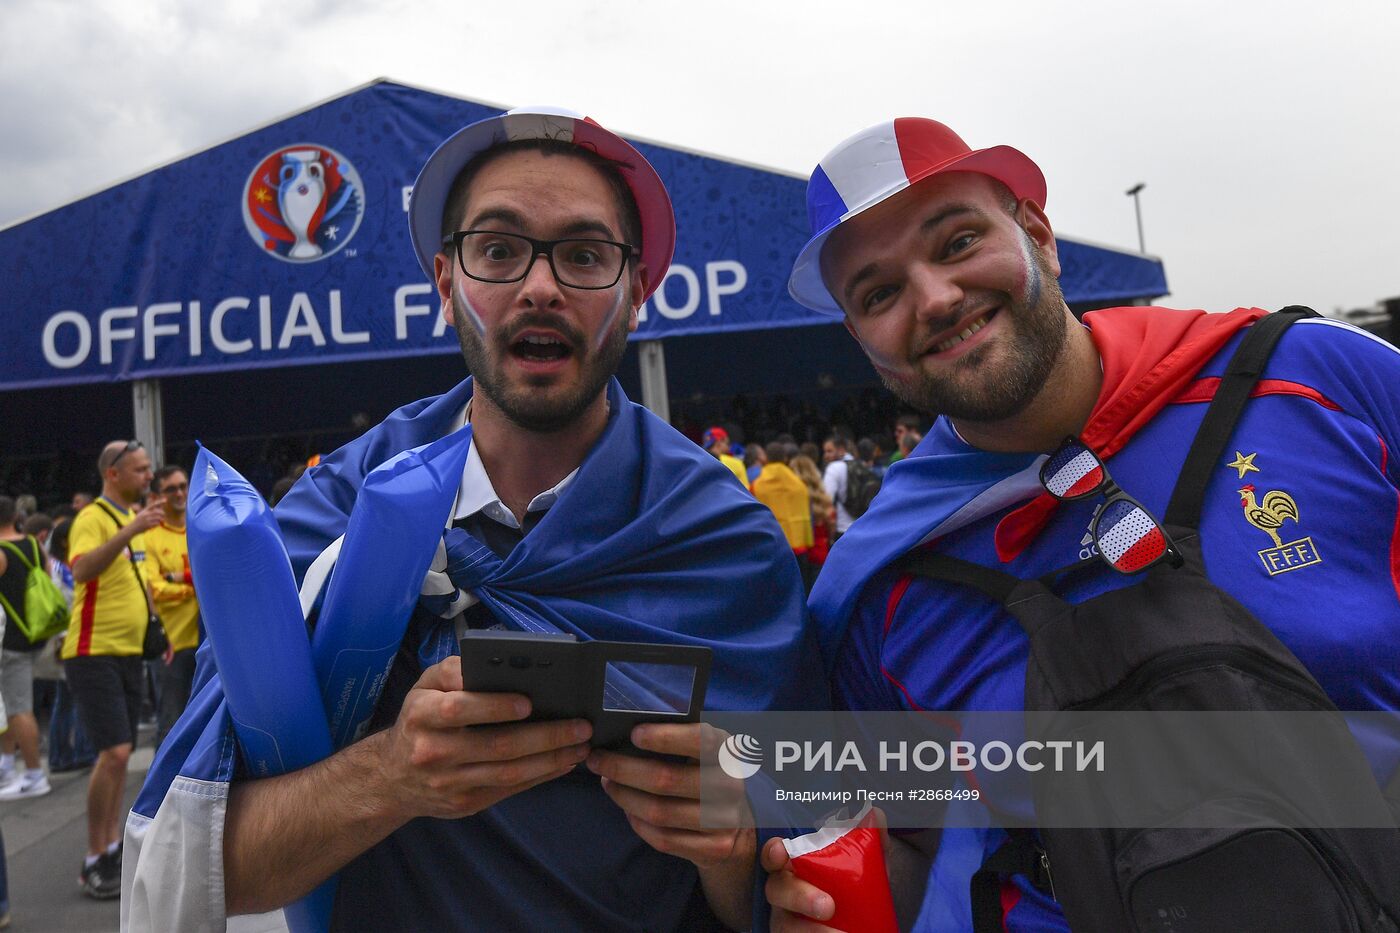 Футбол. Чемпионат Европы - 2016. Матч Франция - Румыния